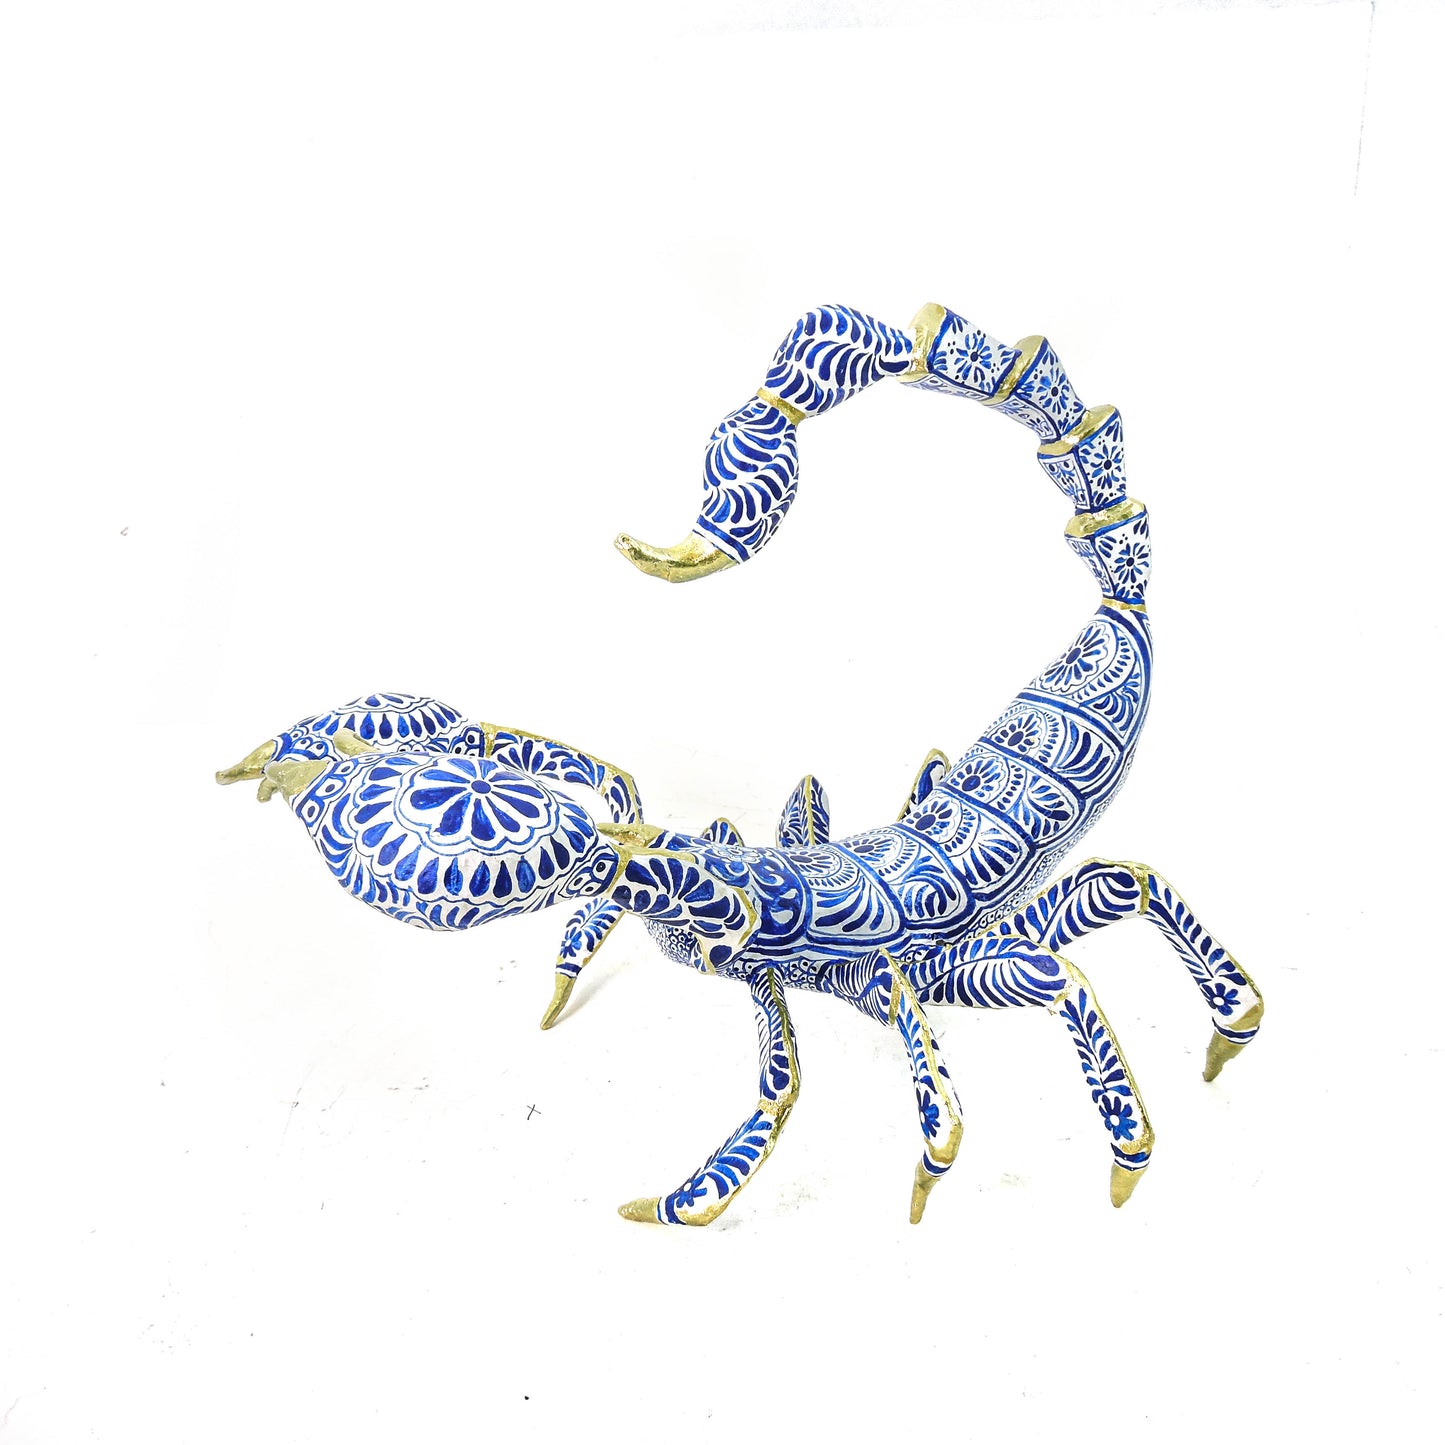 Escorpion ceramica I